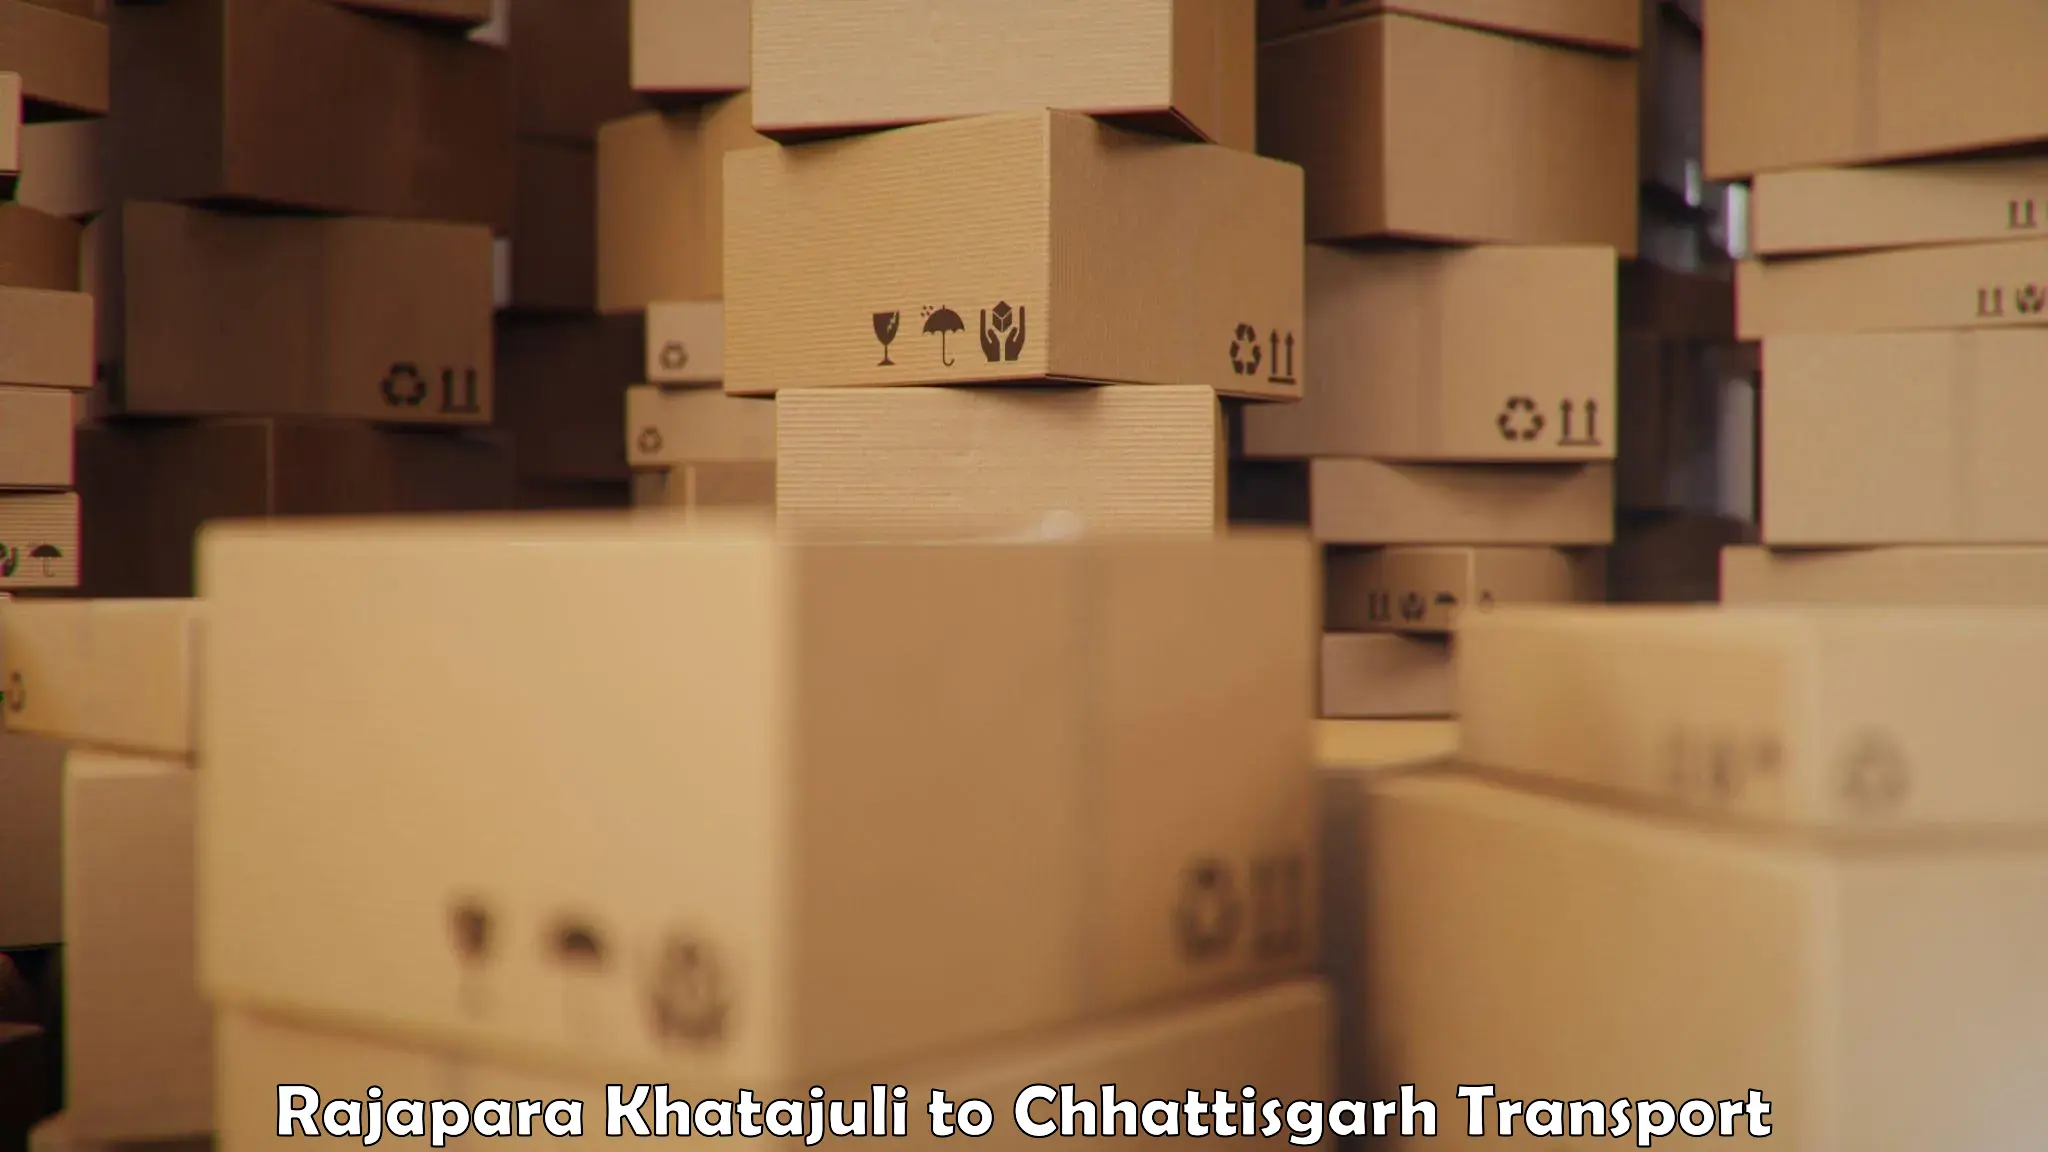 Two wheeler parcel service Rajapara Khatajuli to Korea Chhattisgarh